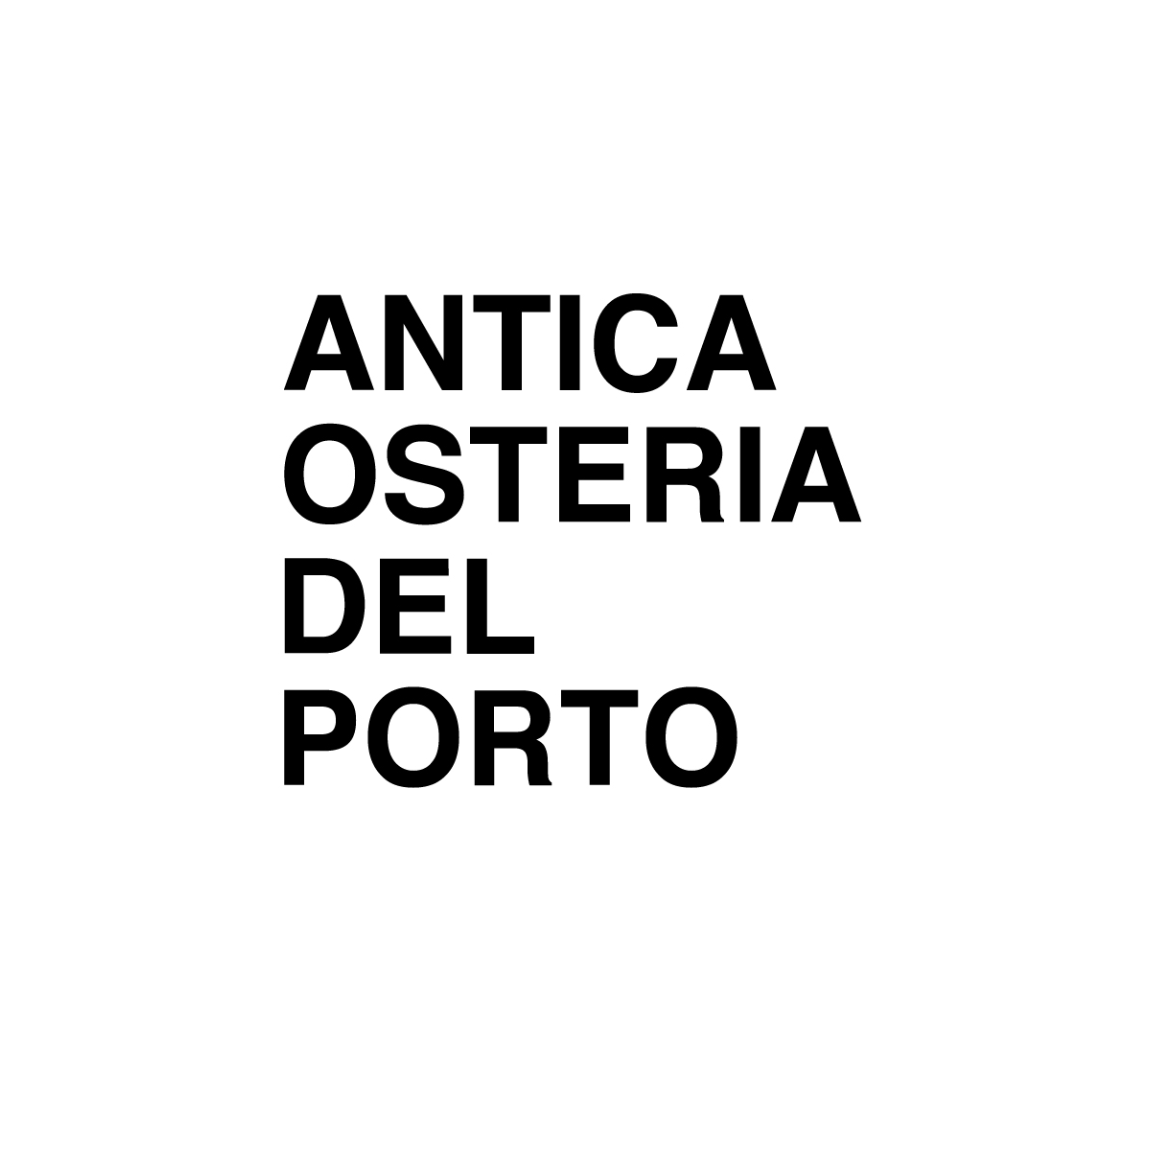 ANTICA OSTERIA DEL PORTO - Restaurant - Lugano - 091 971 42 00 Switzerland | ShowMeLocal.com